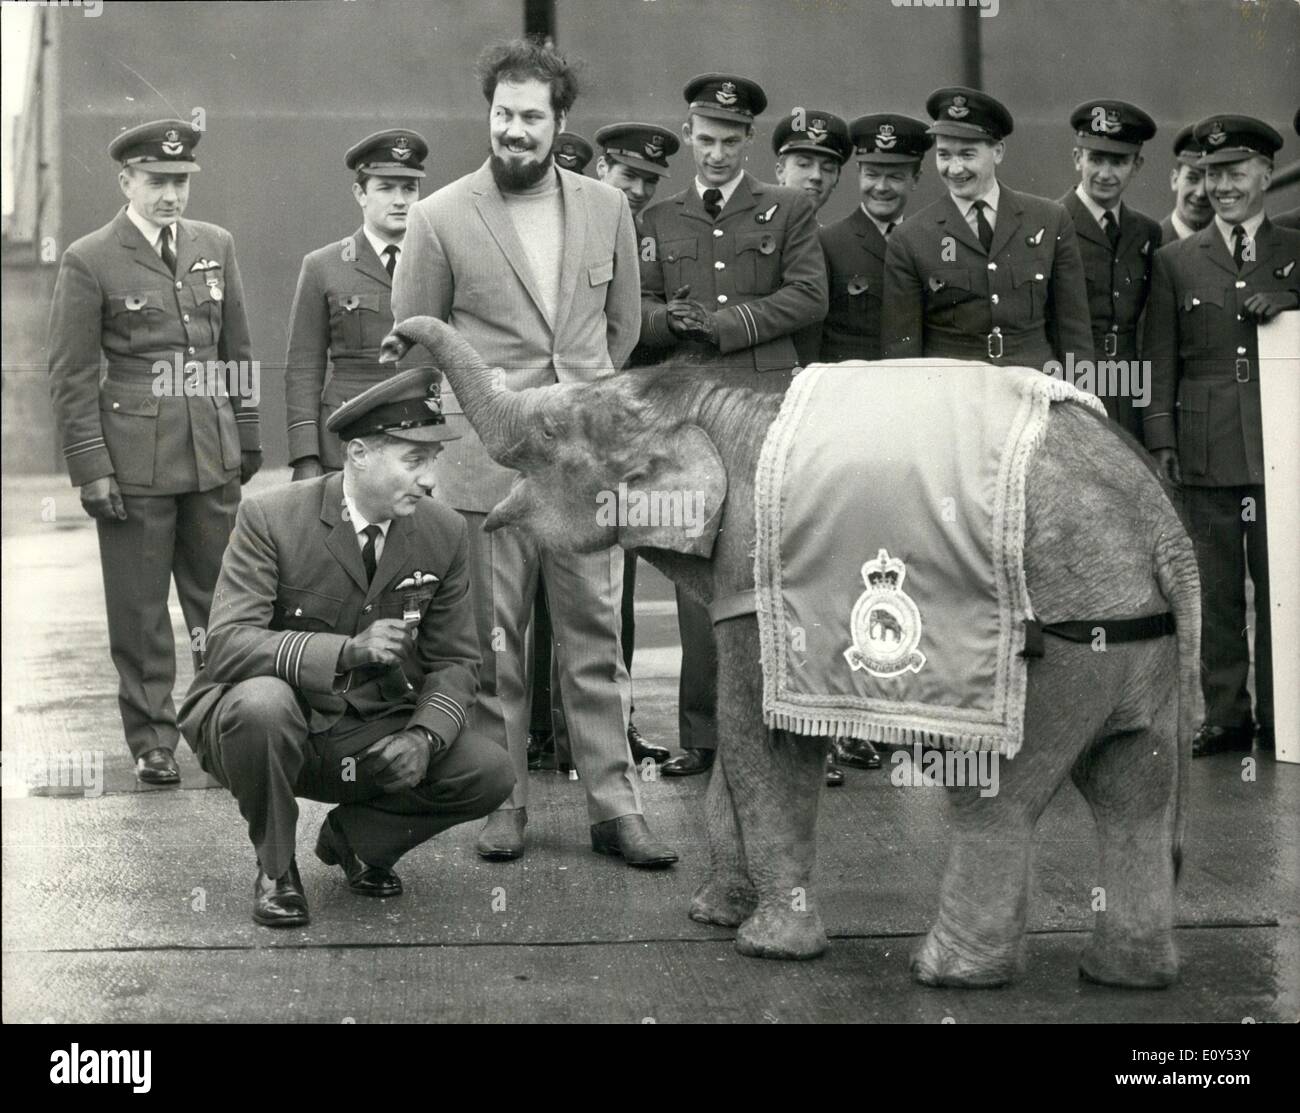 11 novembre 1968 - de la R.A.F. L'éléphant mascotte de l'Escadron adopte comme : n° 27 de l'Escadron de la R.A.F. Strike Command, a organisé un défilé aujourd'hui à la R.A.F. Gare Scampton, près de Lincoln, pour marquer l'adoption de ''Gosta'' une peine de huit mois de l'éléphant du Zoo Sherwood, Hucknall, Nottingham. Il est également le 53e anniversaire de la formation de l'Escadron. L'éléphant est commémoré dans No 27 de l'Escadron Insigne : il découle du premier avion avec lequel l'escadron a été équipée en 1915 l'Martinsyde Scout, plus tard d'être appelé l'éléphant Martinsyde en raison de son apparence lourde Banque D'Images